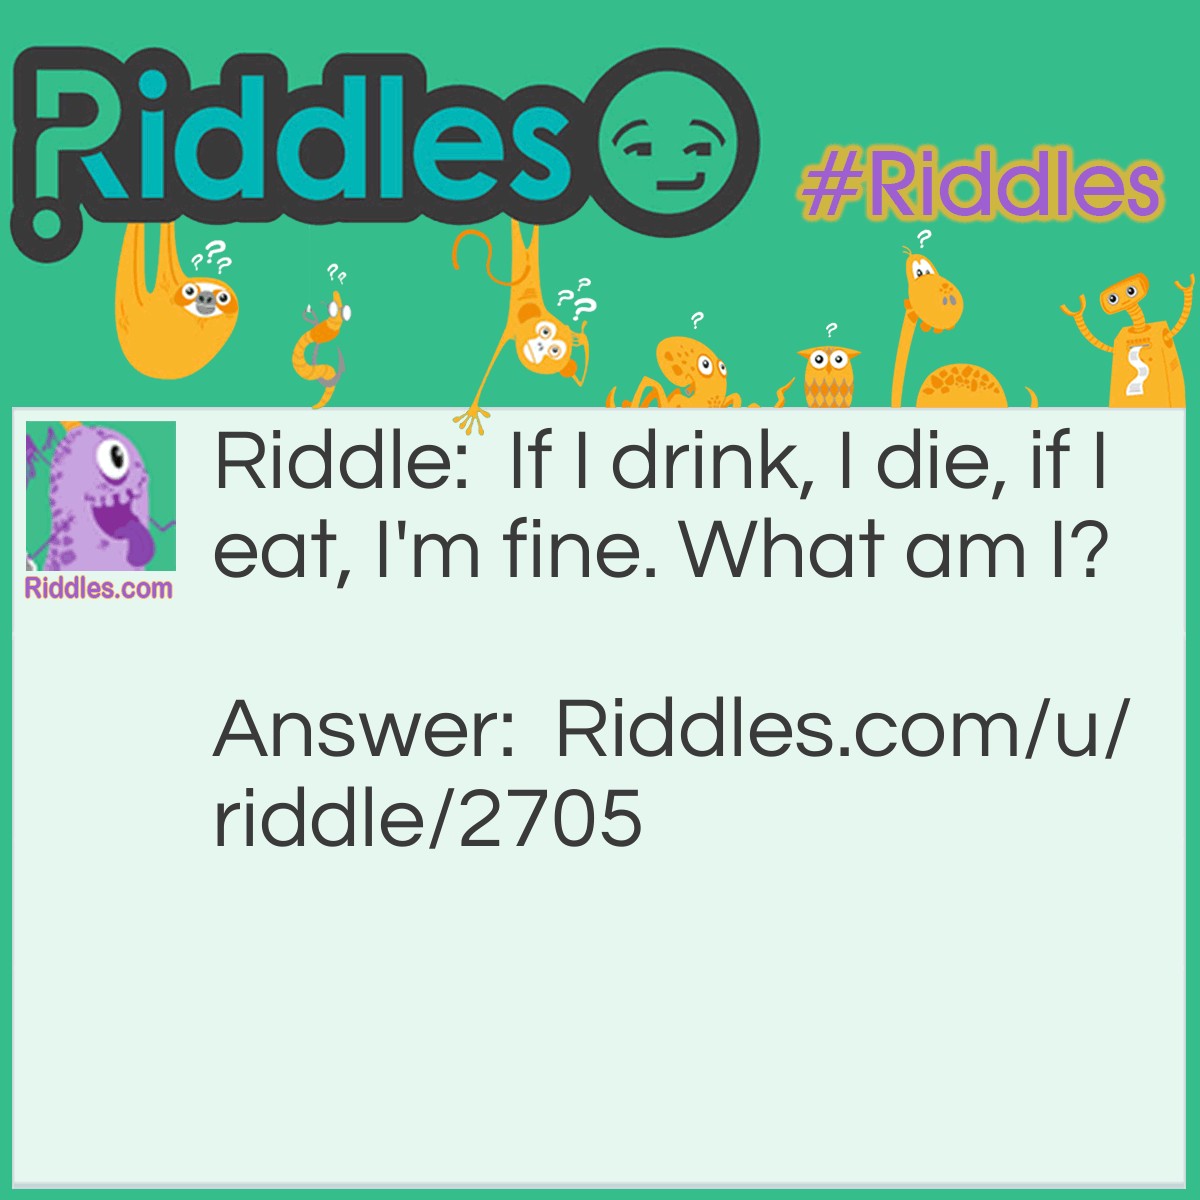 Riddle: If I drink, I die, if I eat, I'm fine. What am I? Answer: Fire!